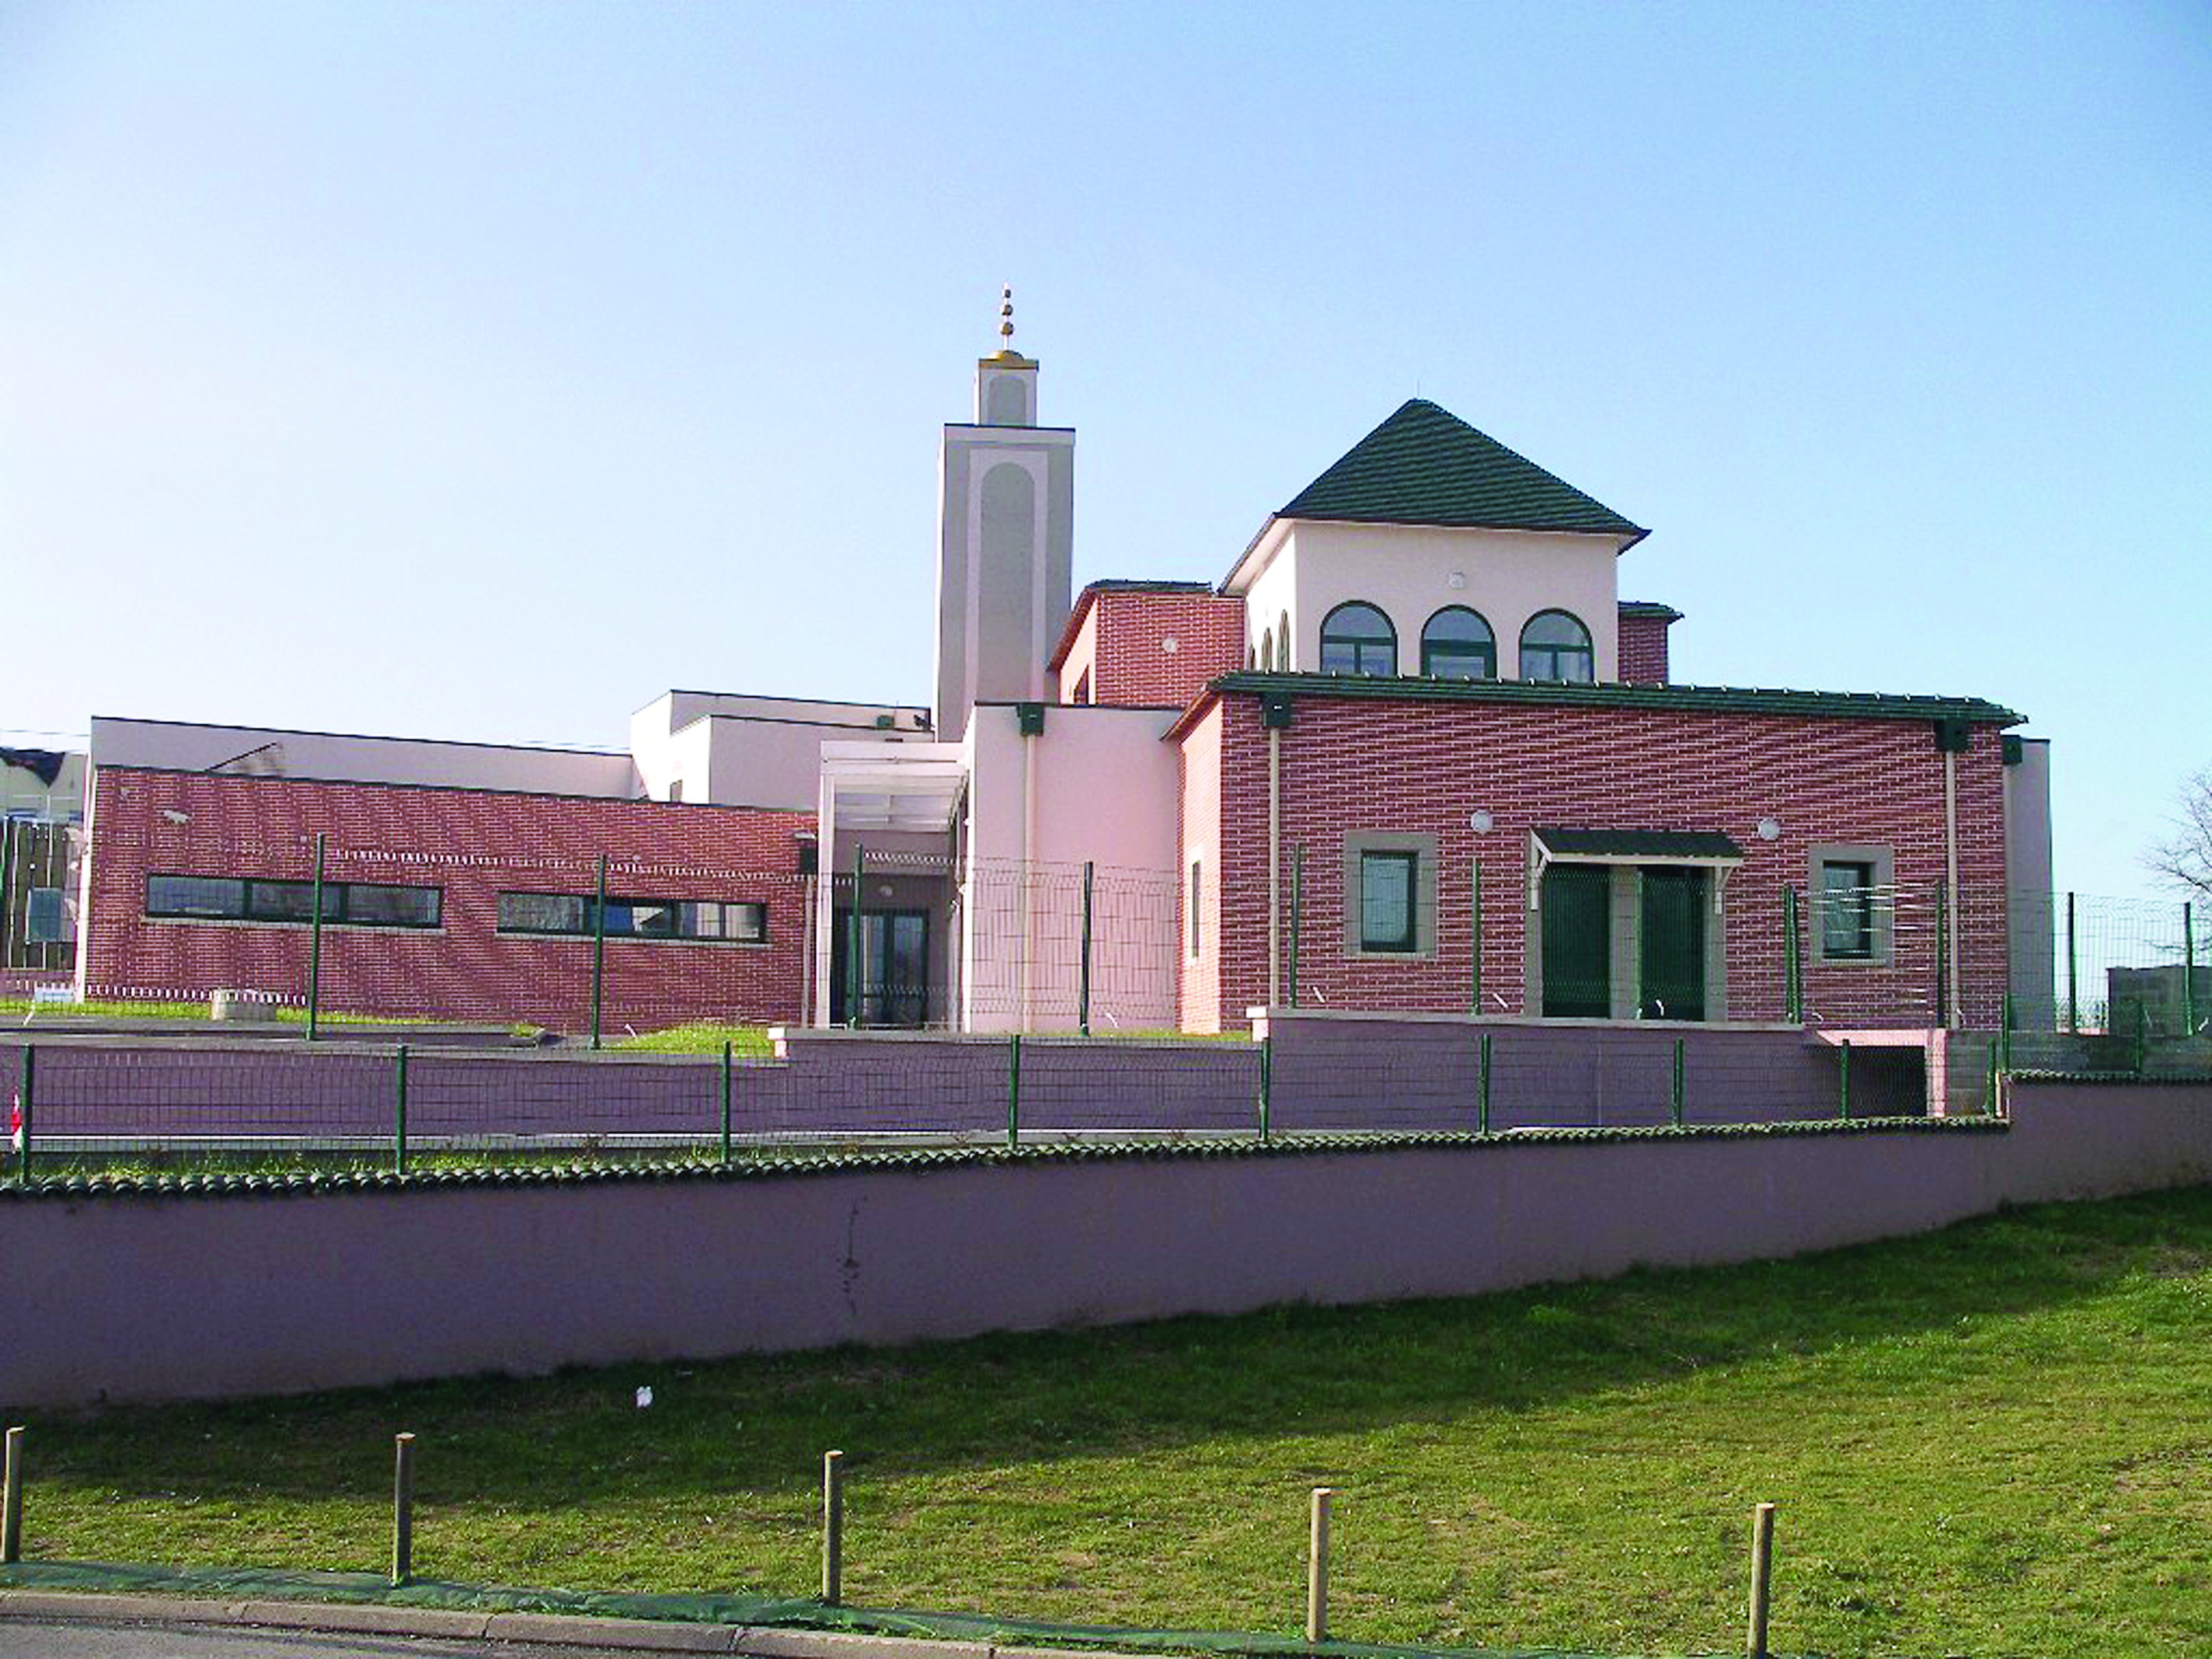 المساجد الفرنسيةتحف معمارية تتوزع في المدن والضواحي